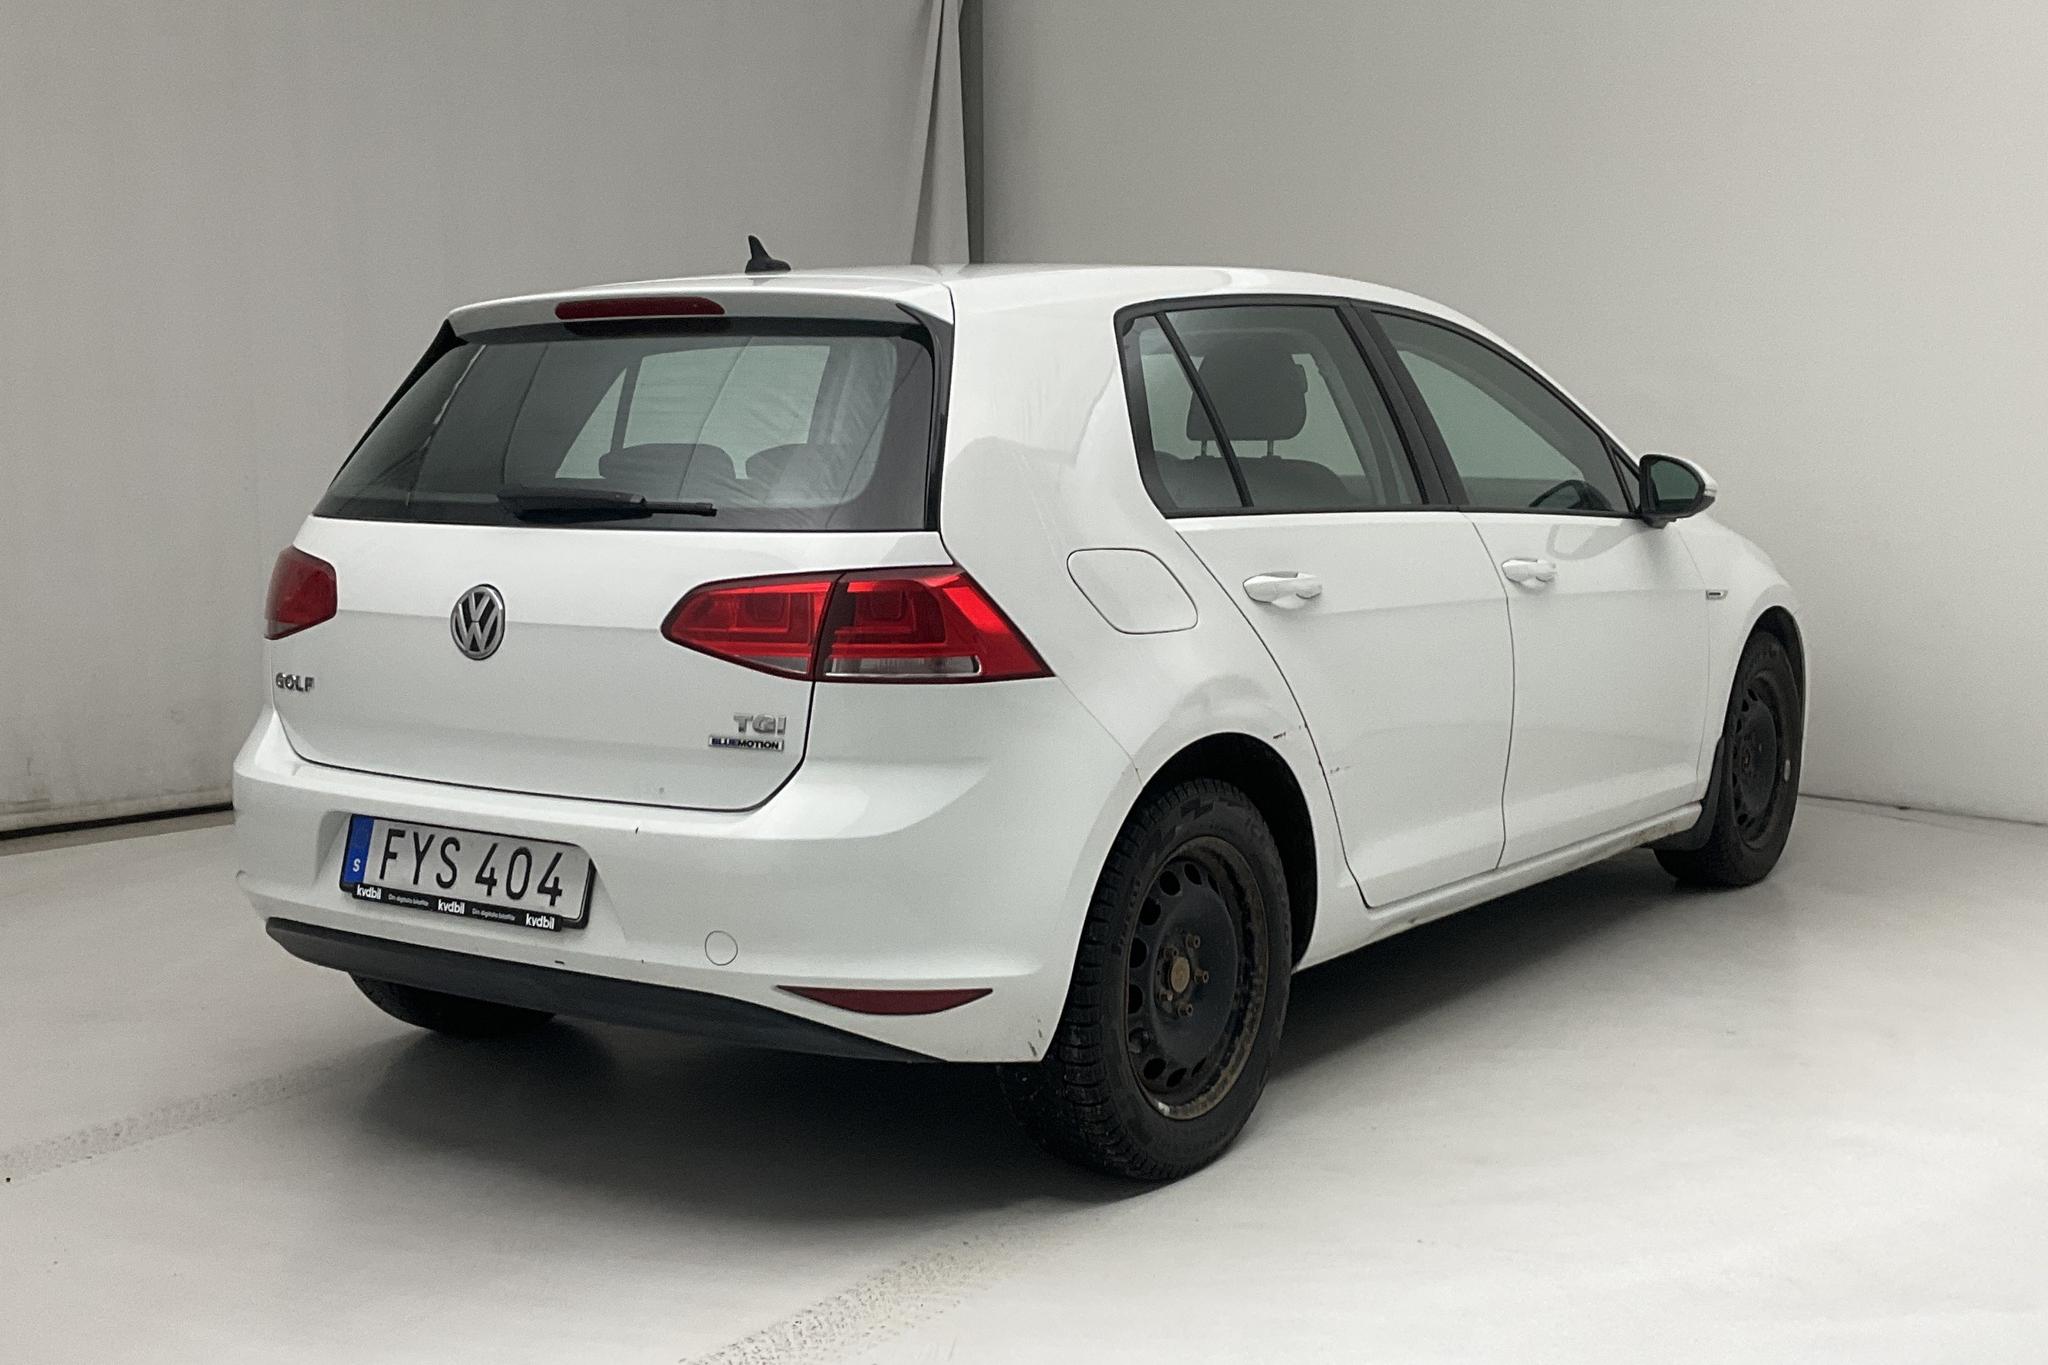 VW Golf VII 1.4 TGI 5dr (110hk) - 111 560 km - Automatic - white - 2017